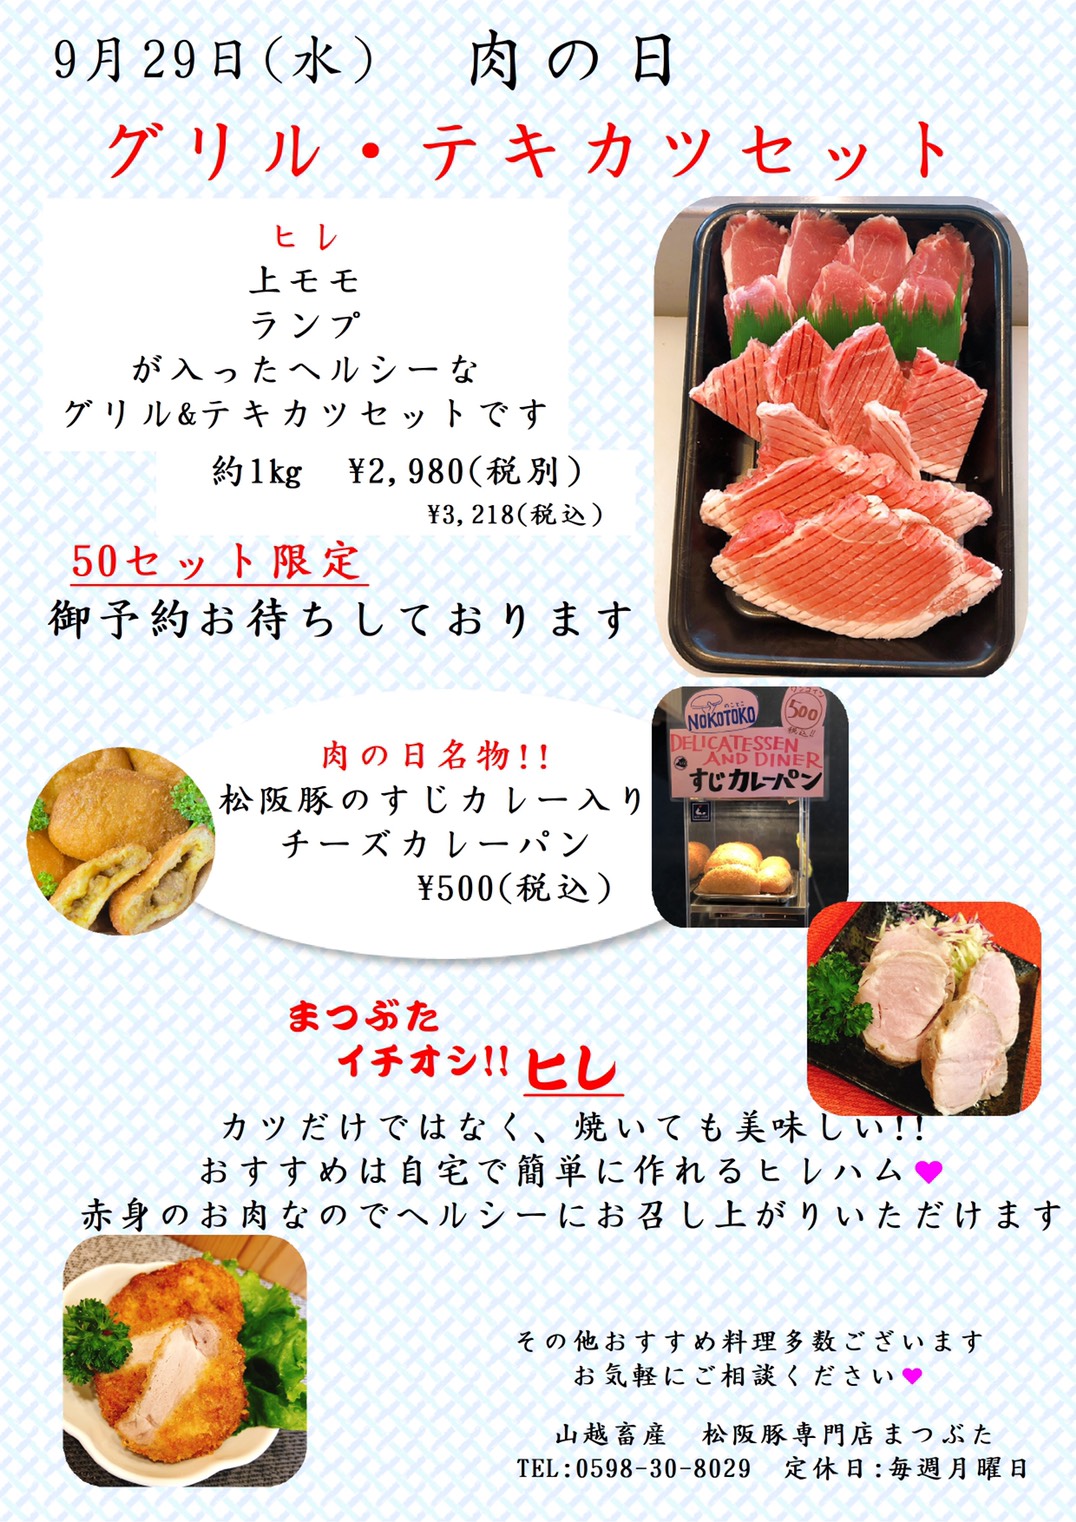 ヒレは焼いても美味 9月まつぶた肉の日 山越畜産 松阪豚専門店 まつぶた